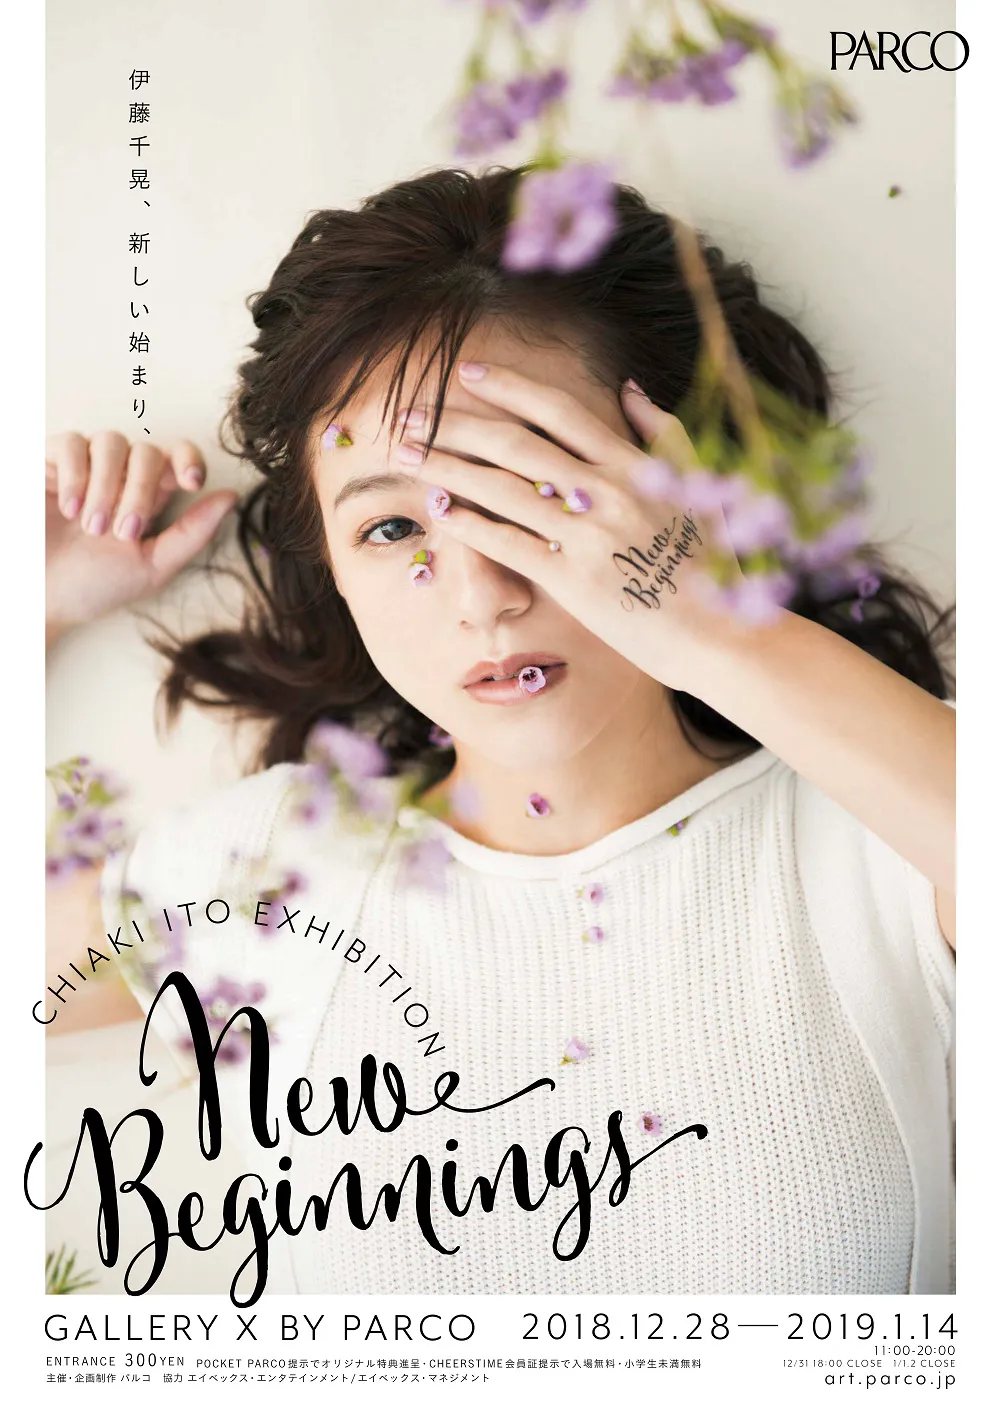 展覧会「CHIAKI ITO EXHIBITION “New Beginnings”」メインビジュアル